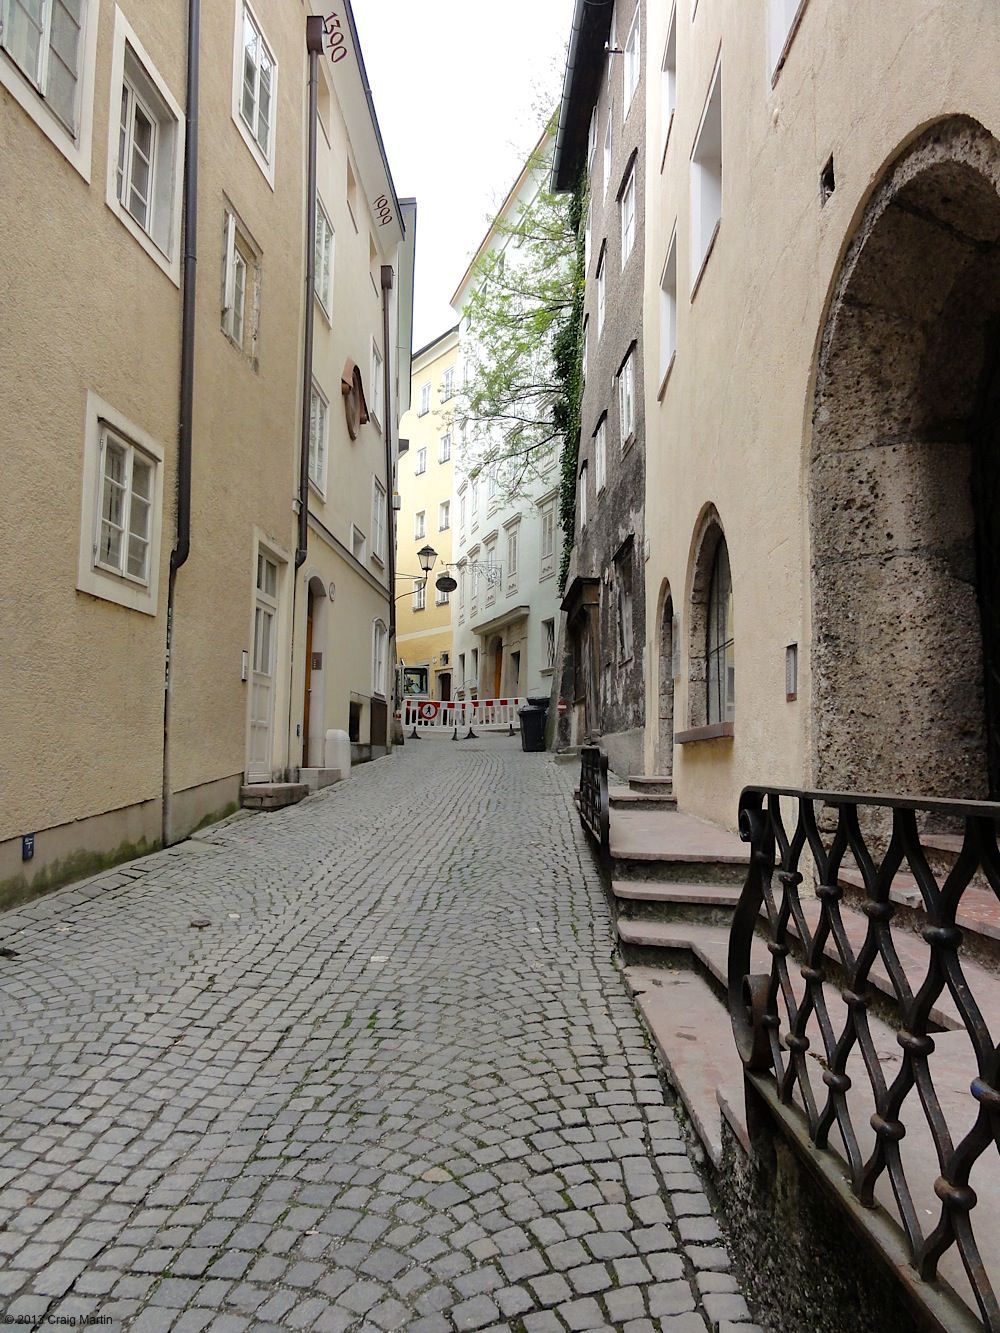 Steingasse - a medieval street running through Salzburg